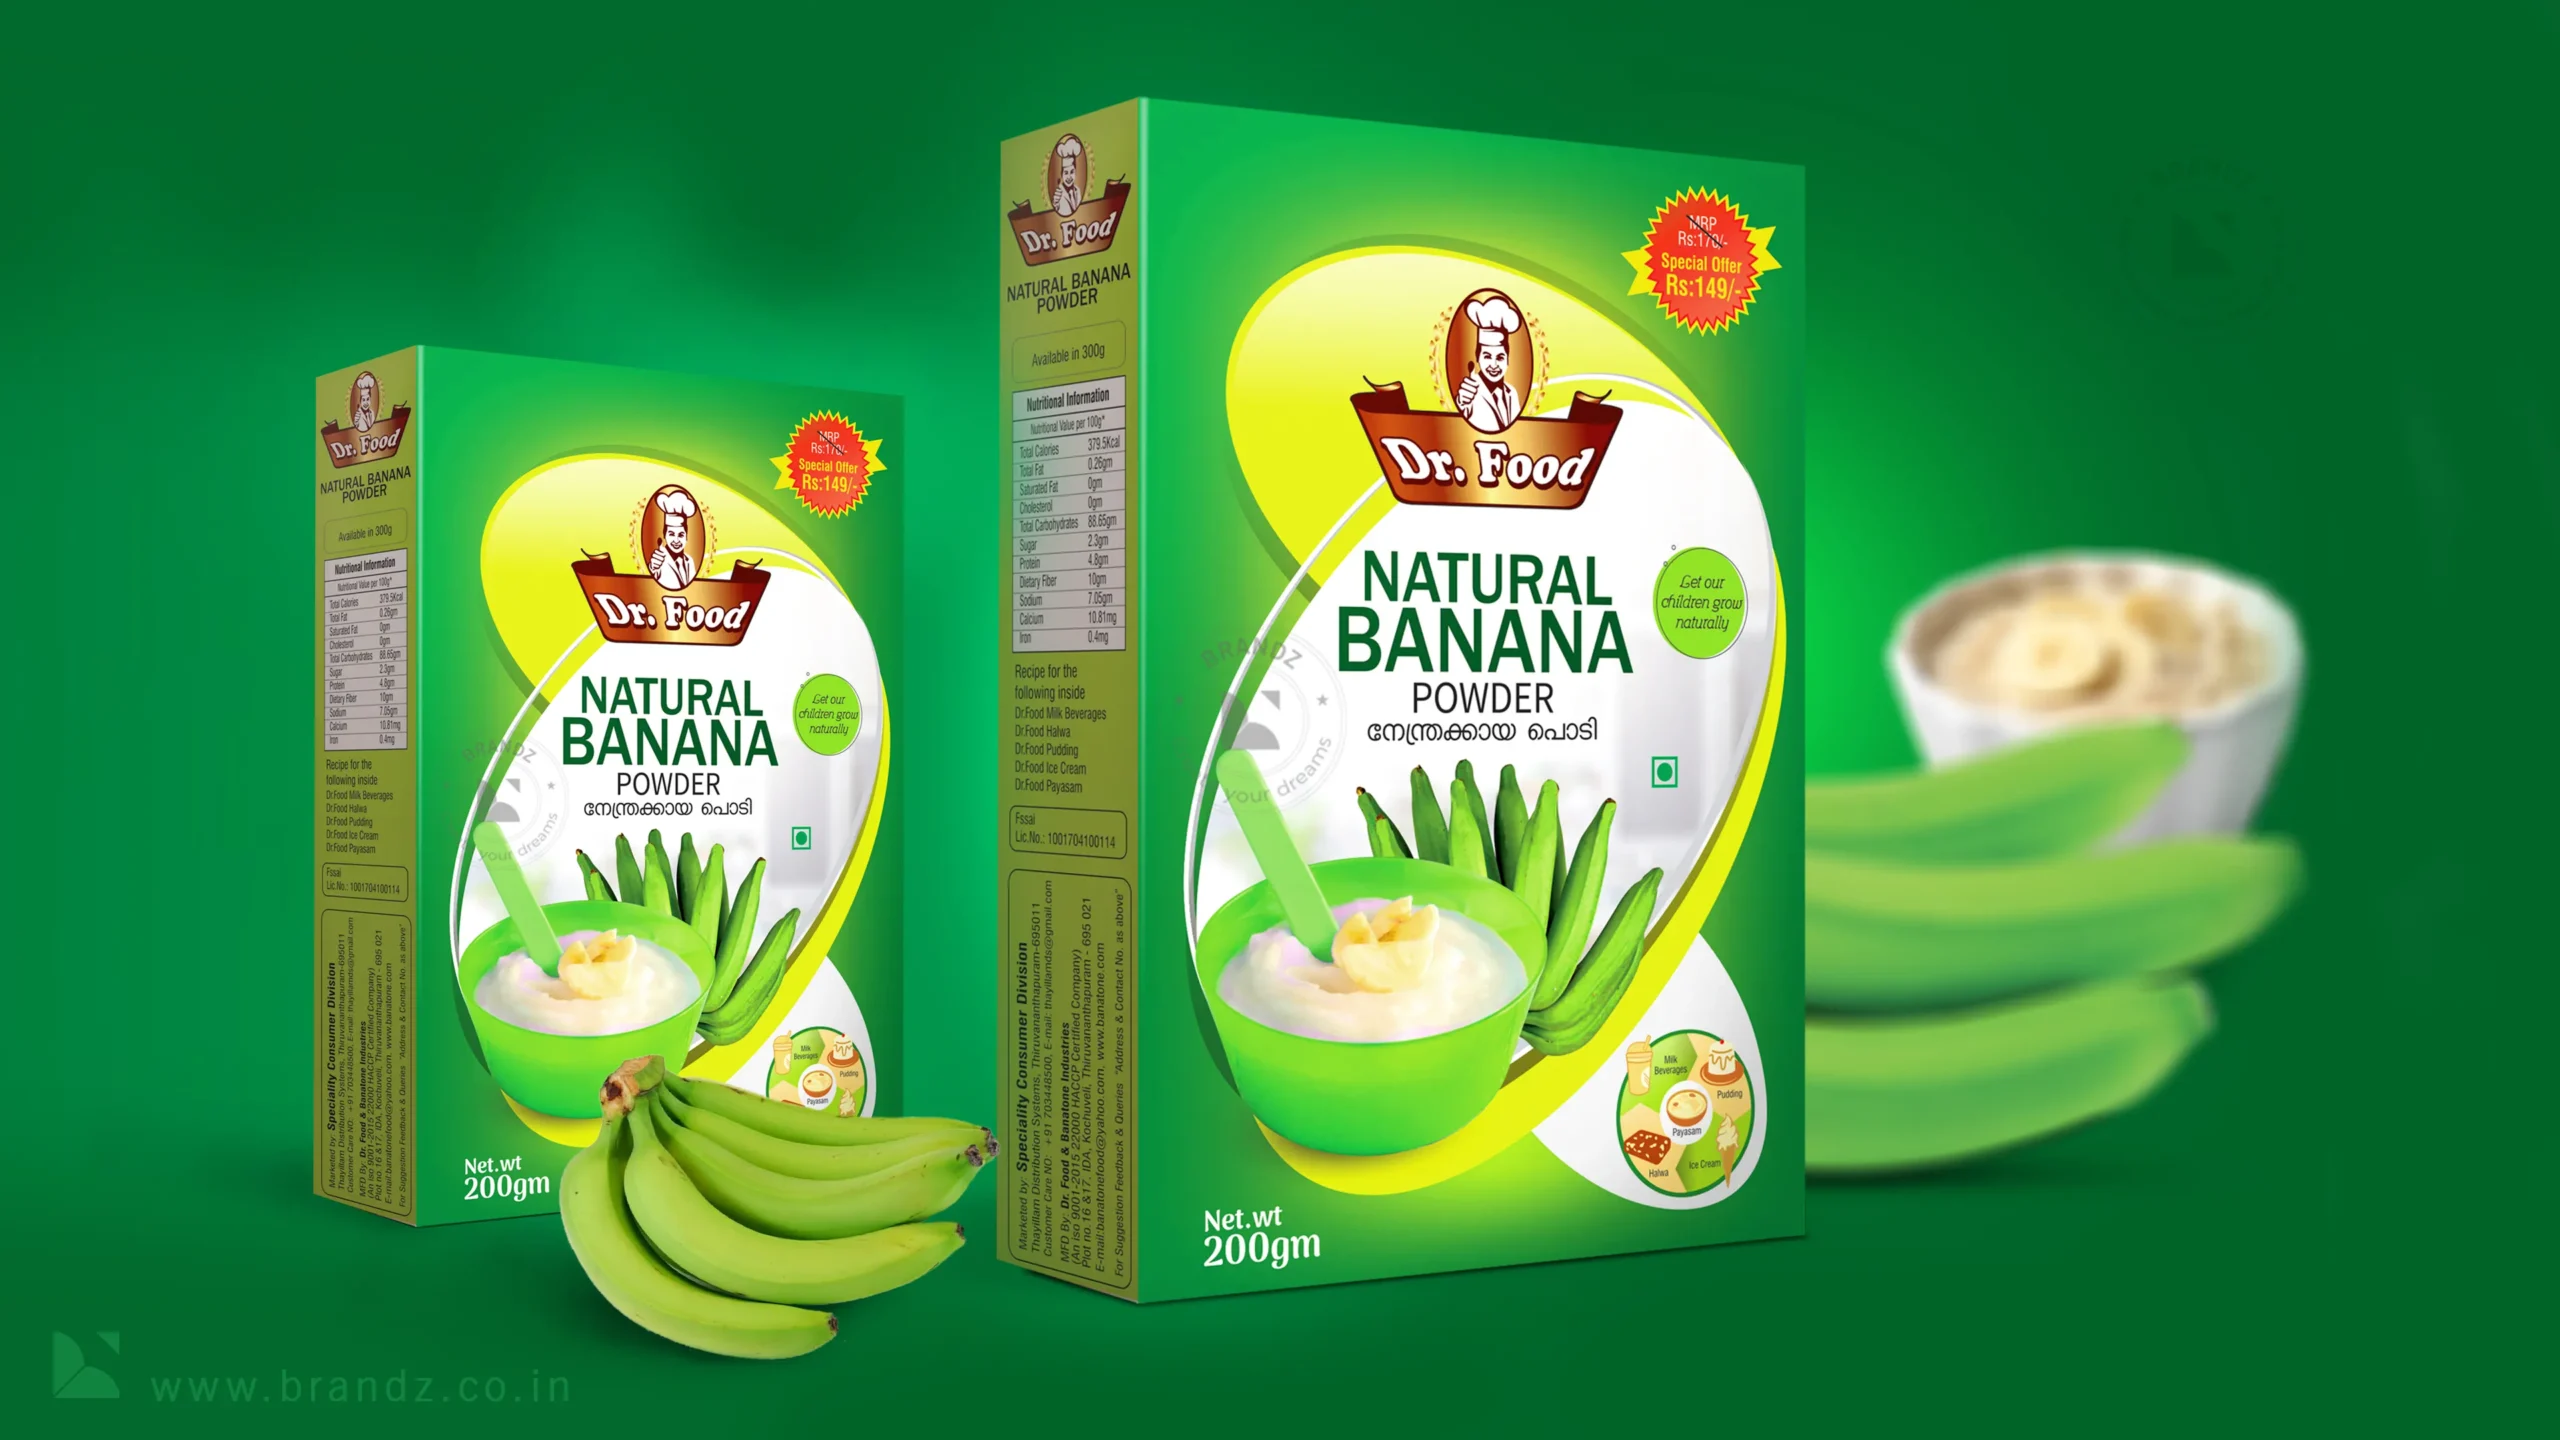 Dr. Food Natural Banana Powder Box